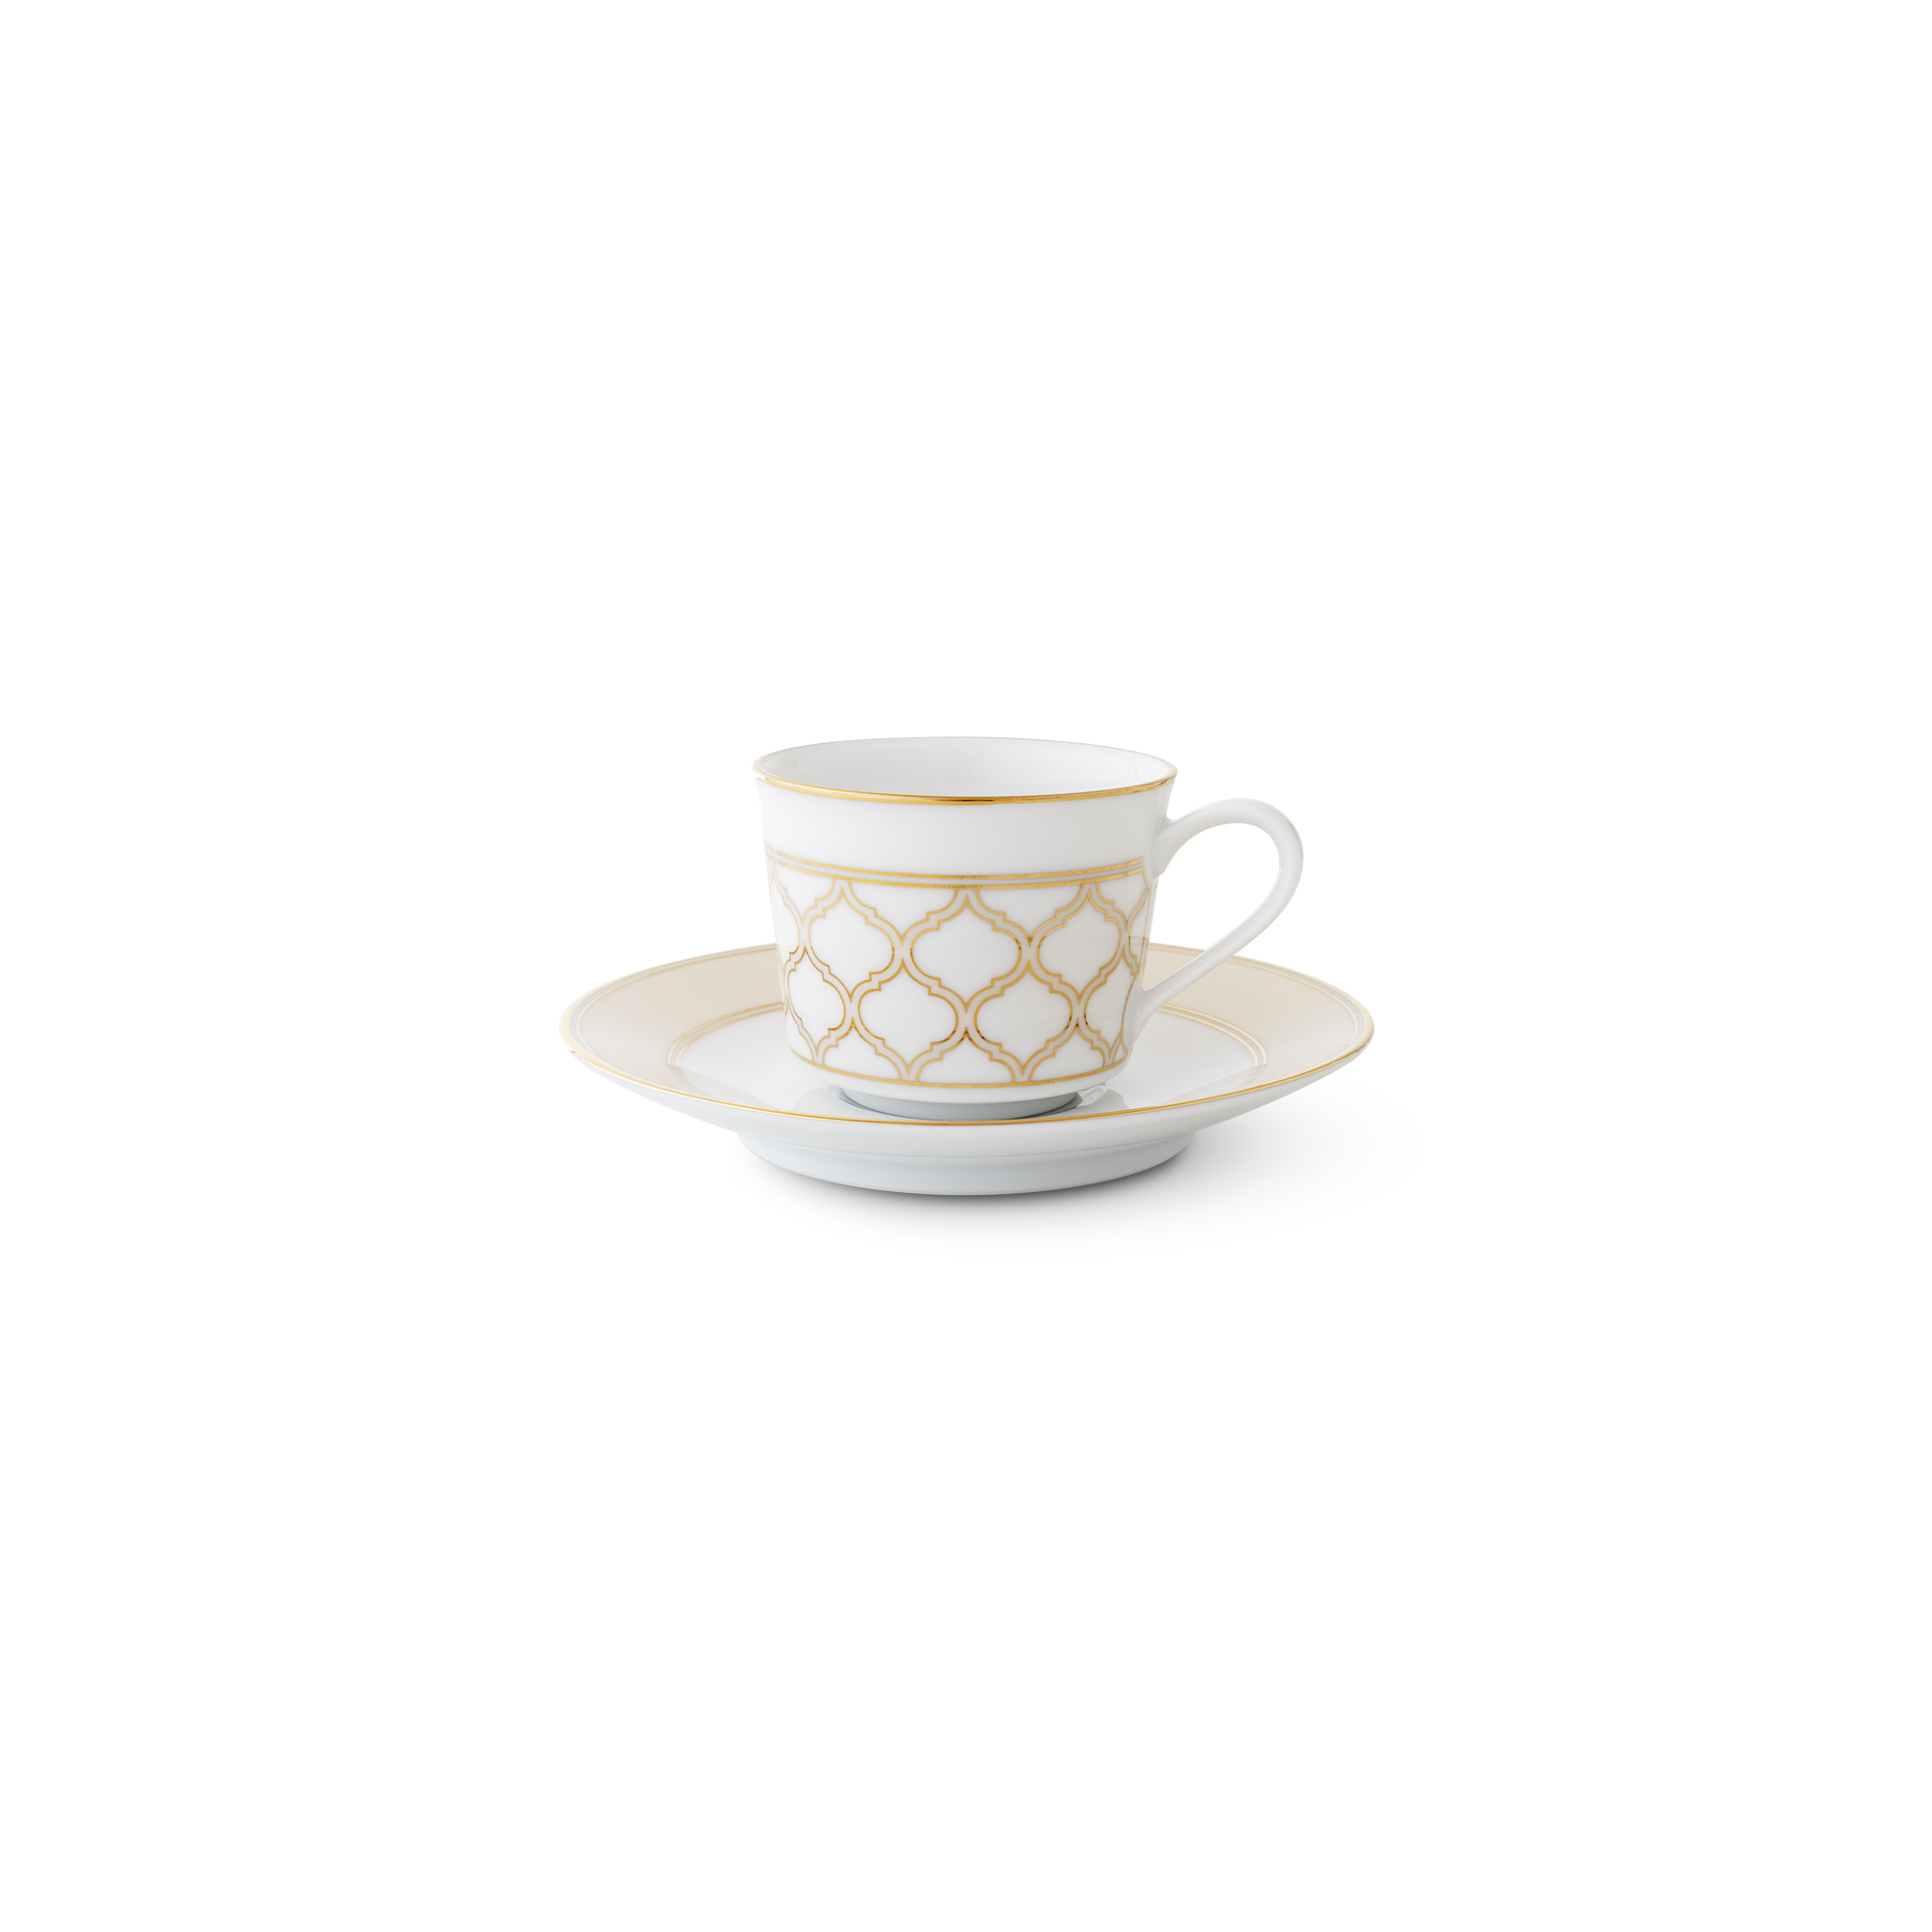  Chén trà (tách trà) kèm đĩa lót dung tích 100ml sứ trắng | Eternal Palace Gold 1728L-T91992 